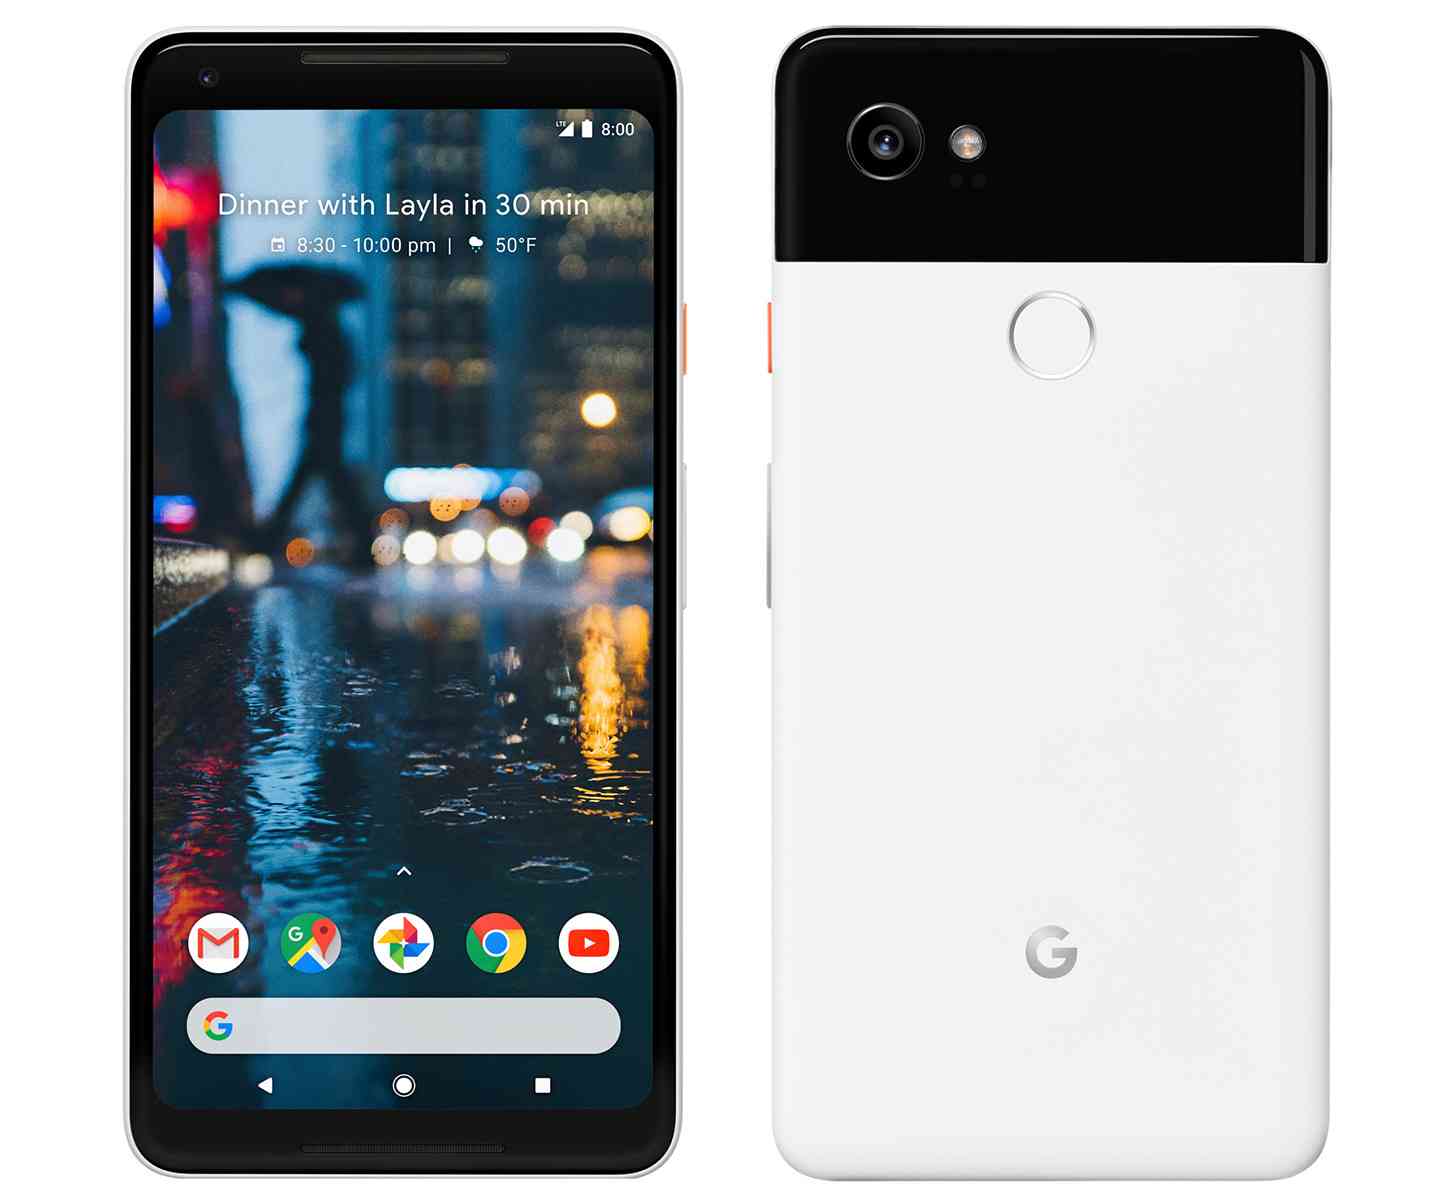 Google Pixel 2 XL images leak